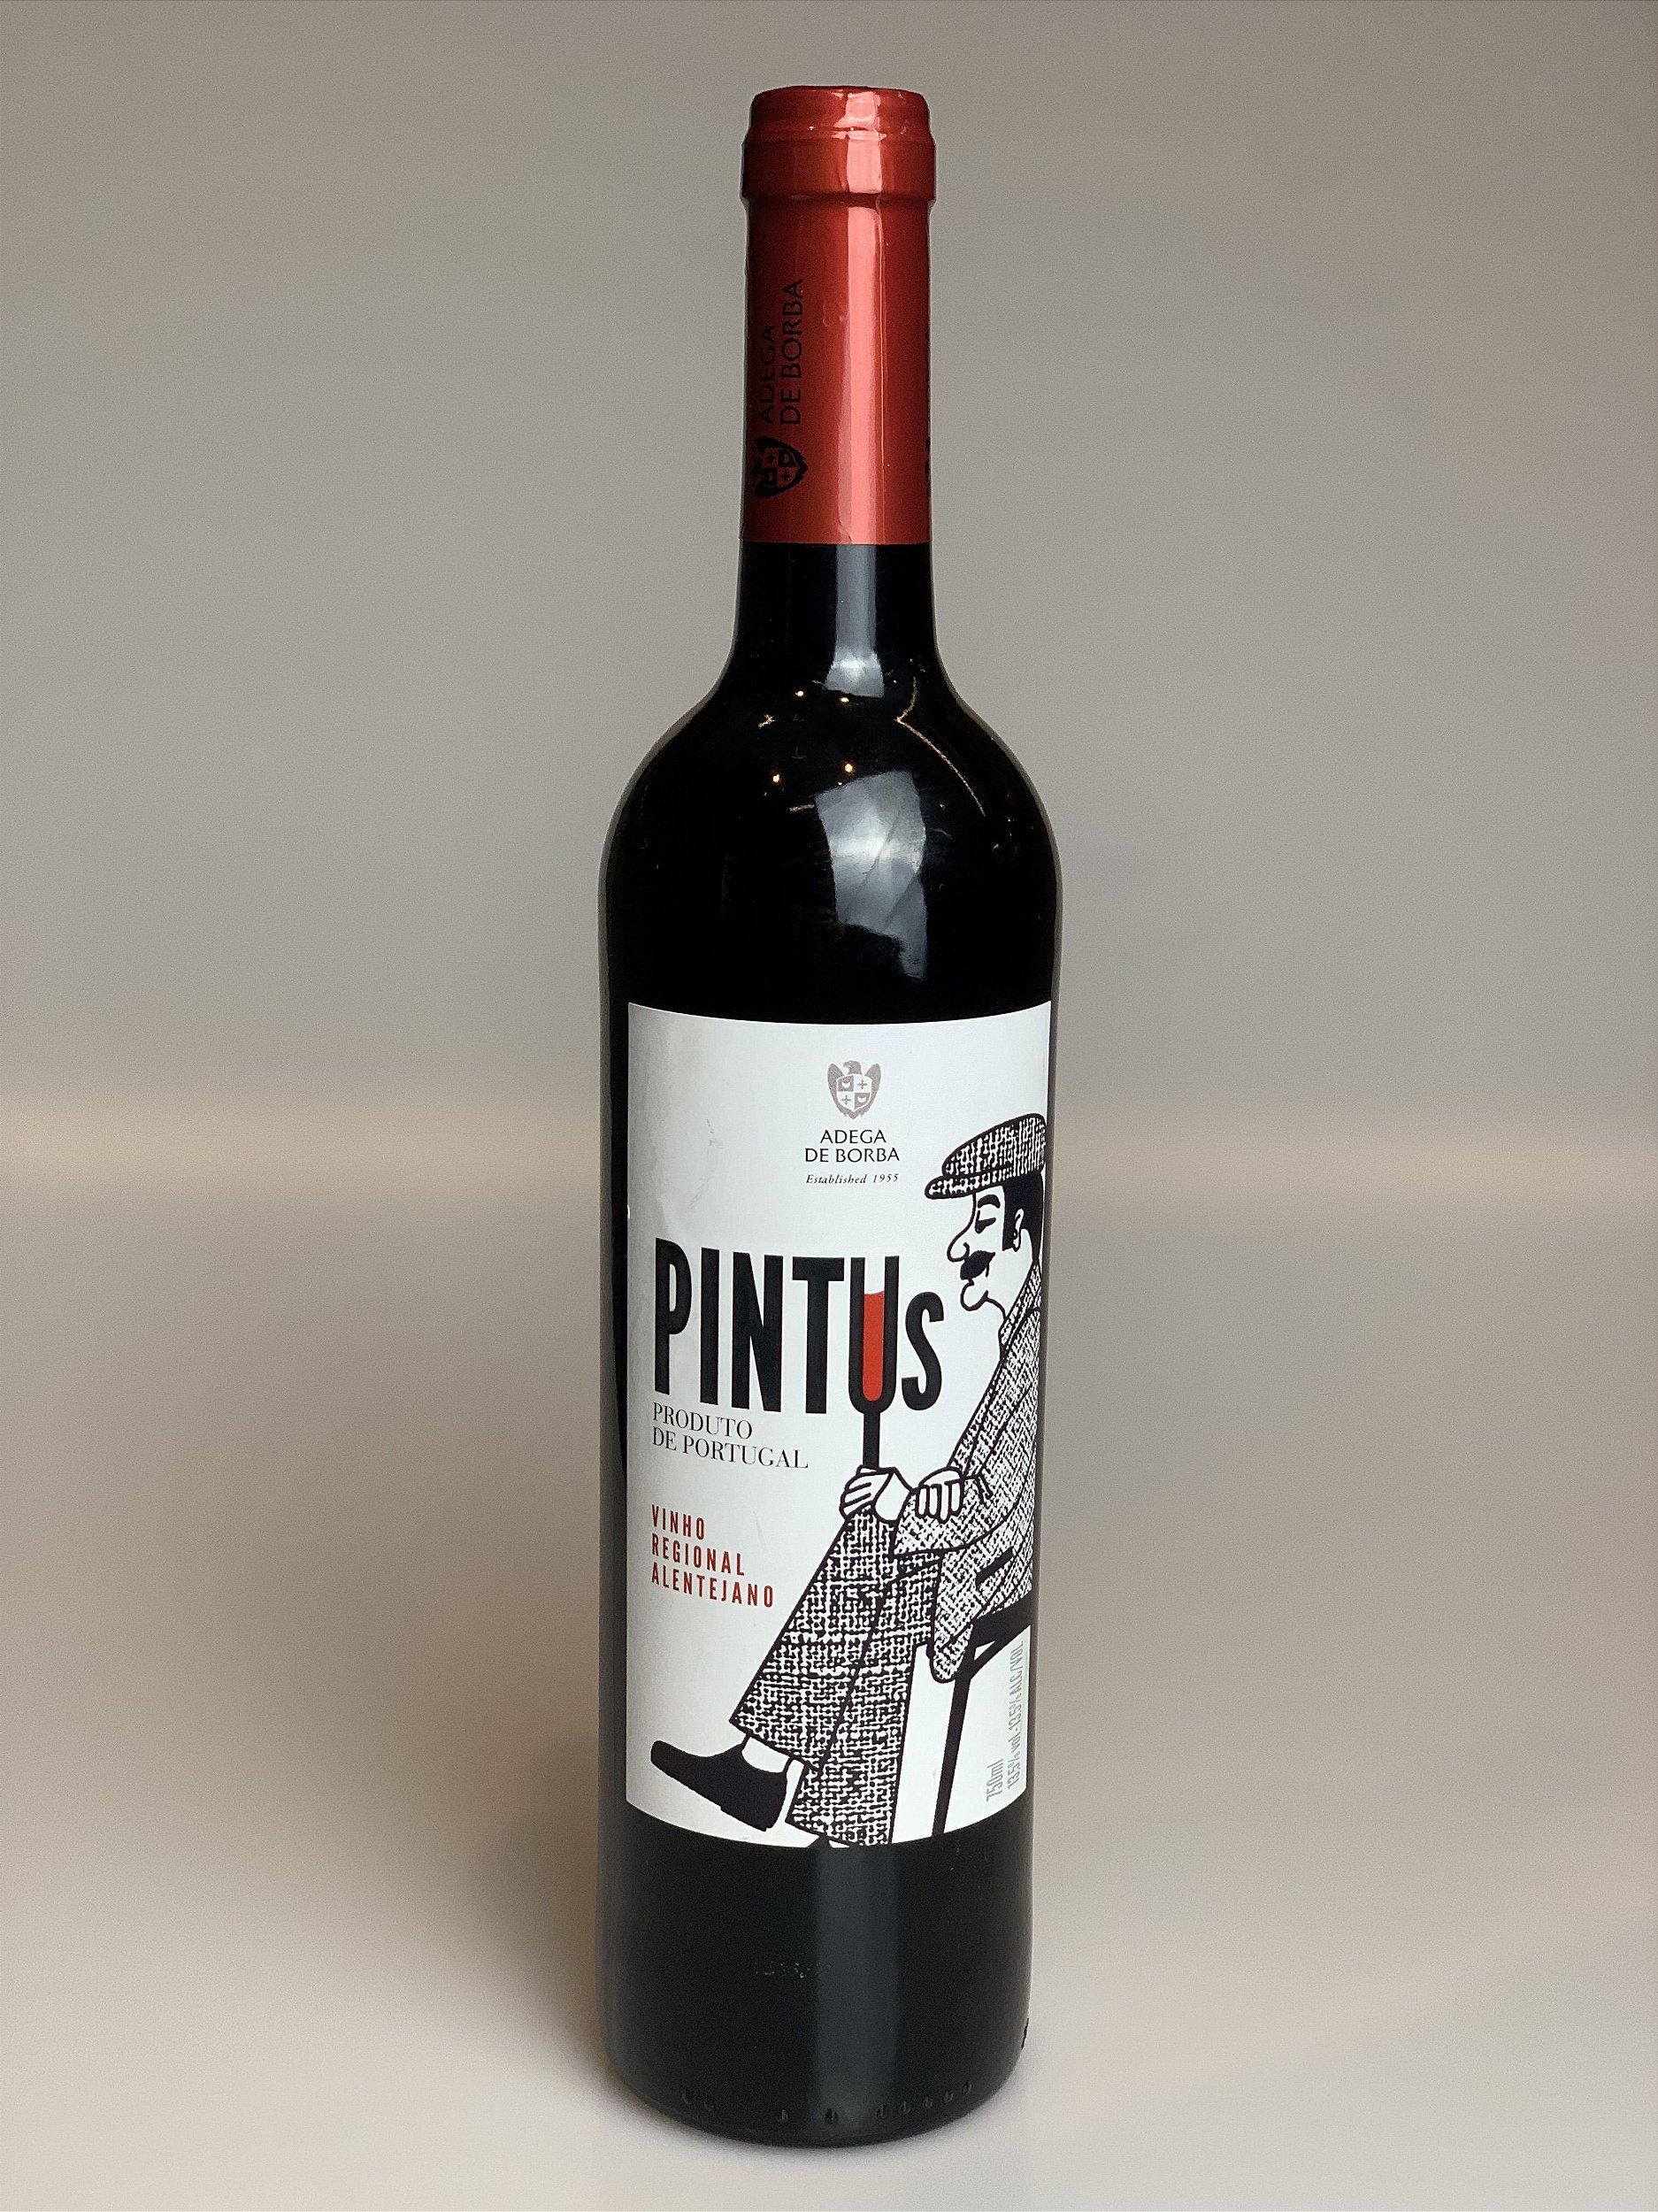 Vinho Pintus Tinto 750ML D\'Porto | A Porto sua Do - Aldeias favorita! mercearia nova portuguesa Aldeias 